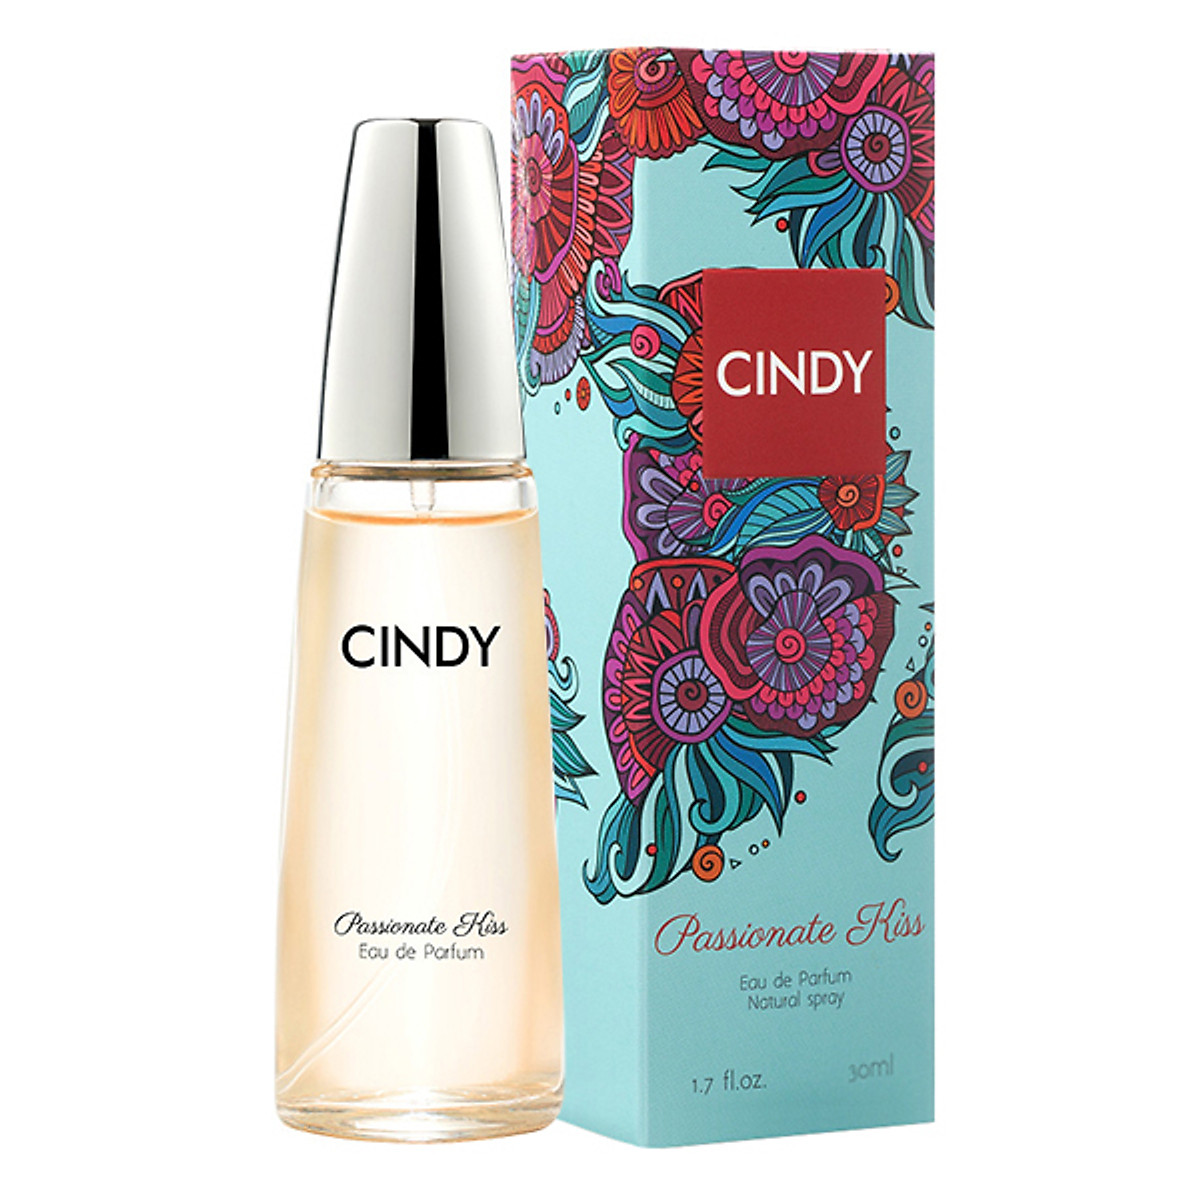 Nước hoa cho nữ Cindy Passionate Kiss mùi hương gợi cảm sành điệu 30ml